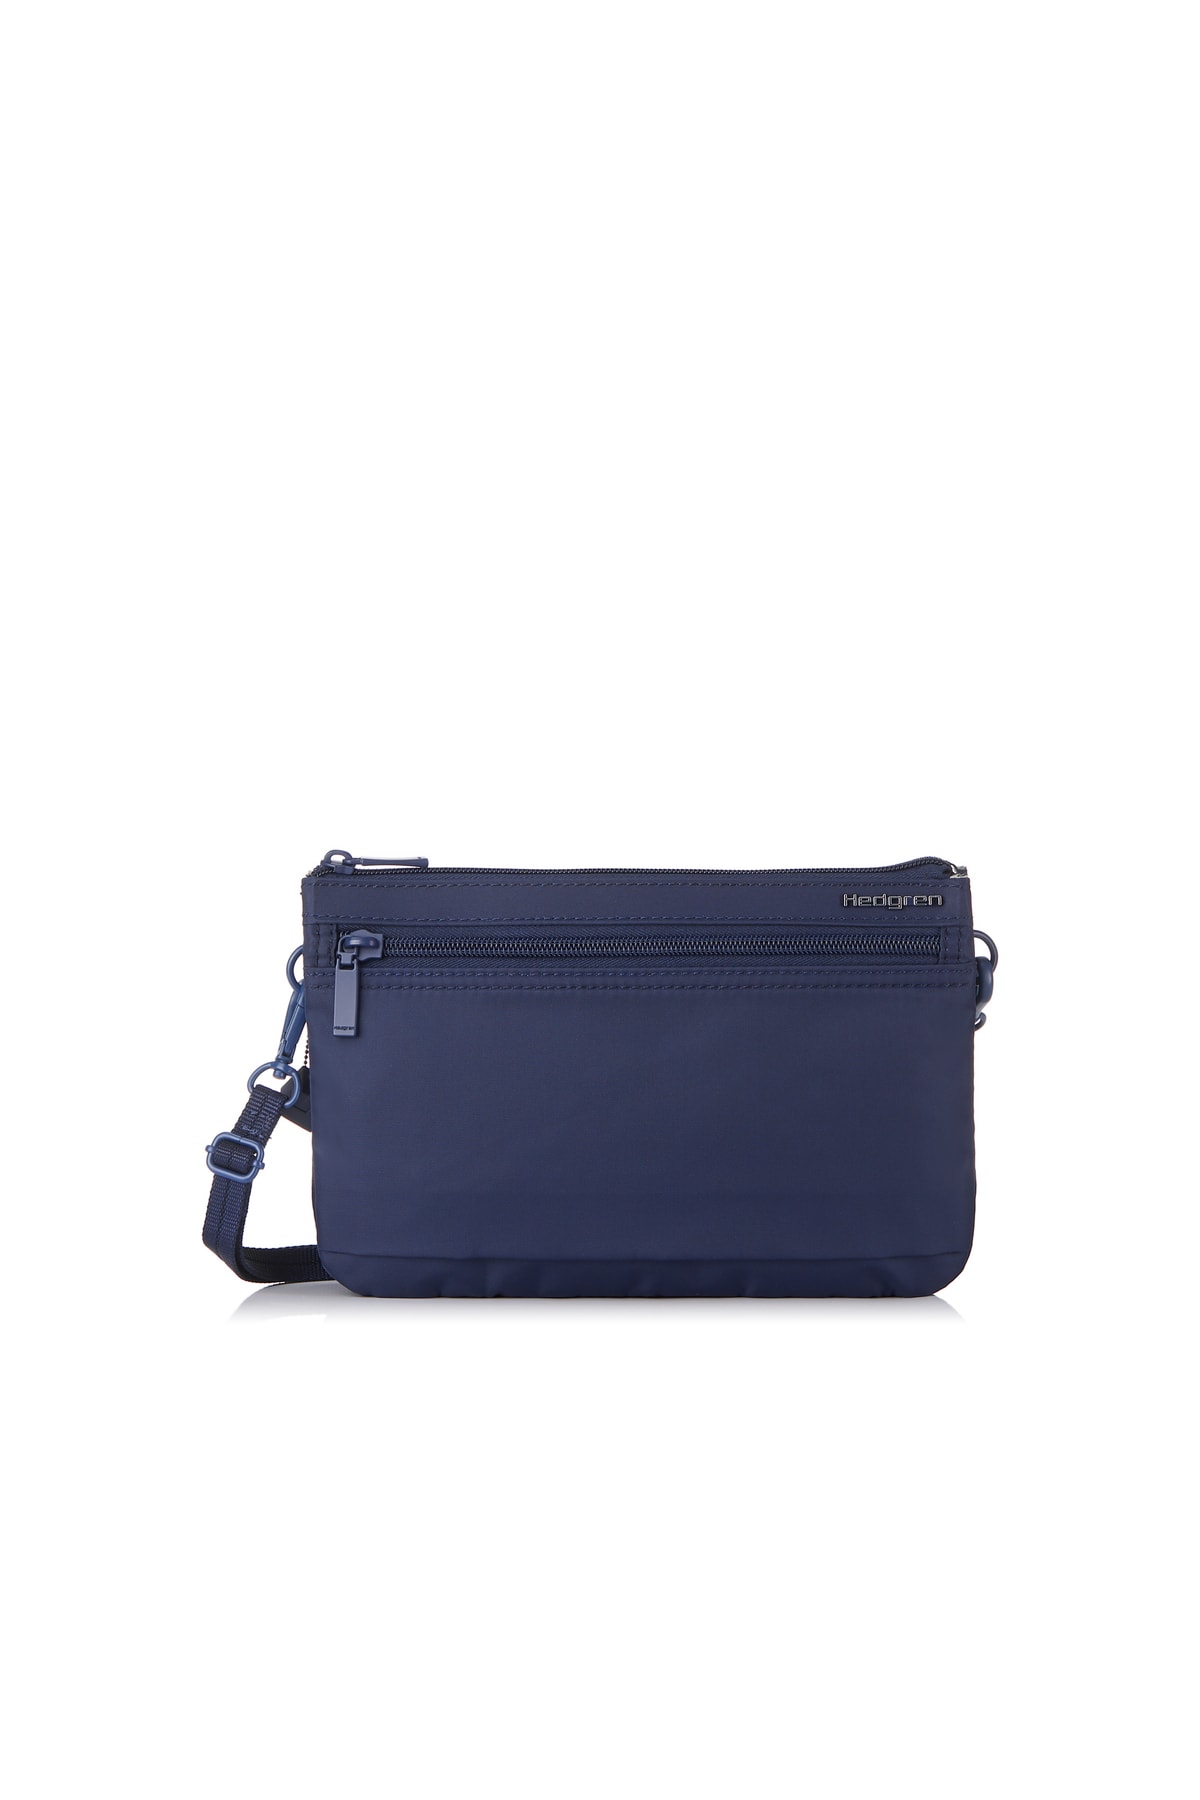 HEDGREN Handtasche Blau Strukturiert Fast ausverkauft